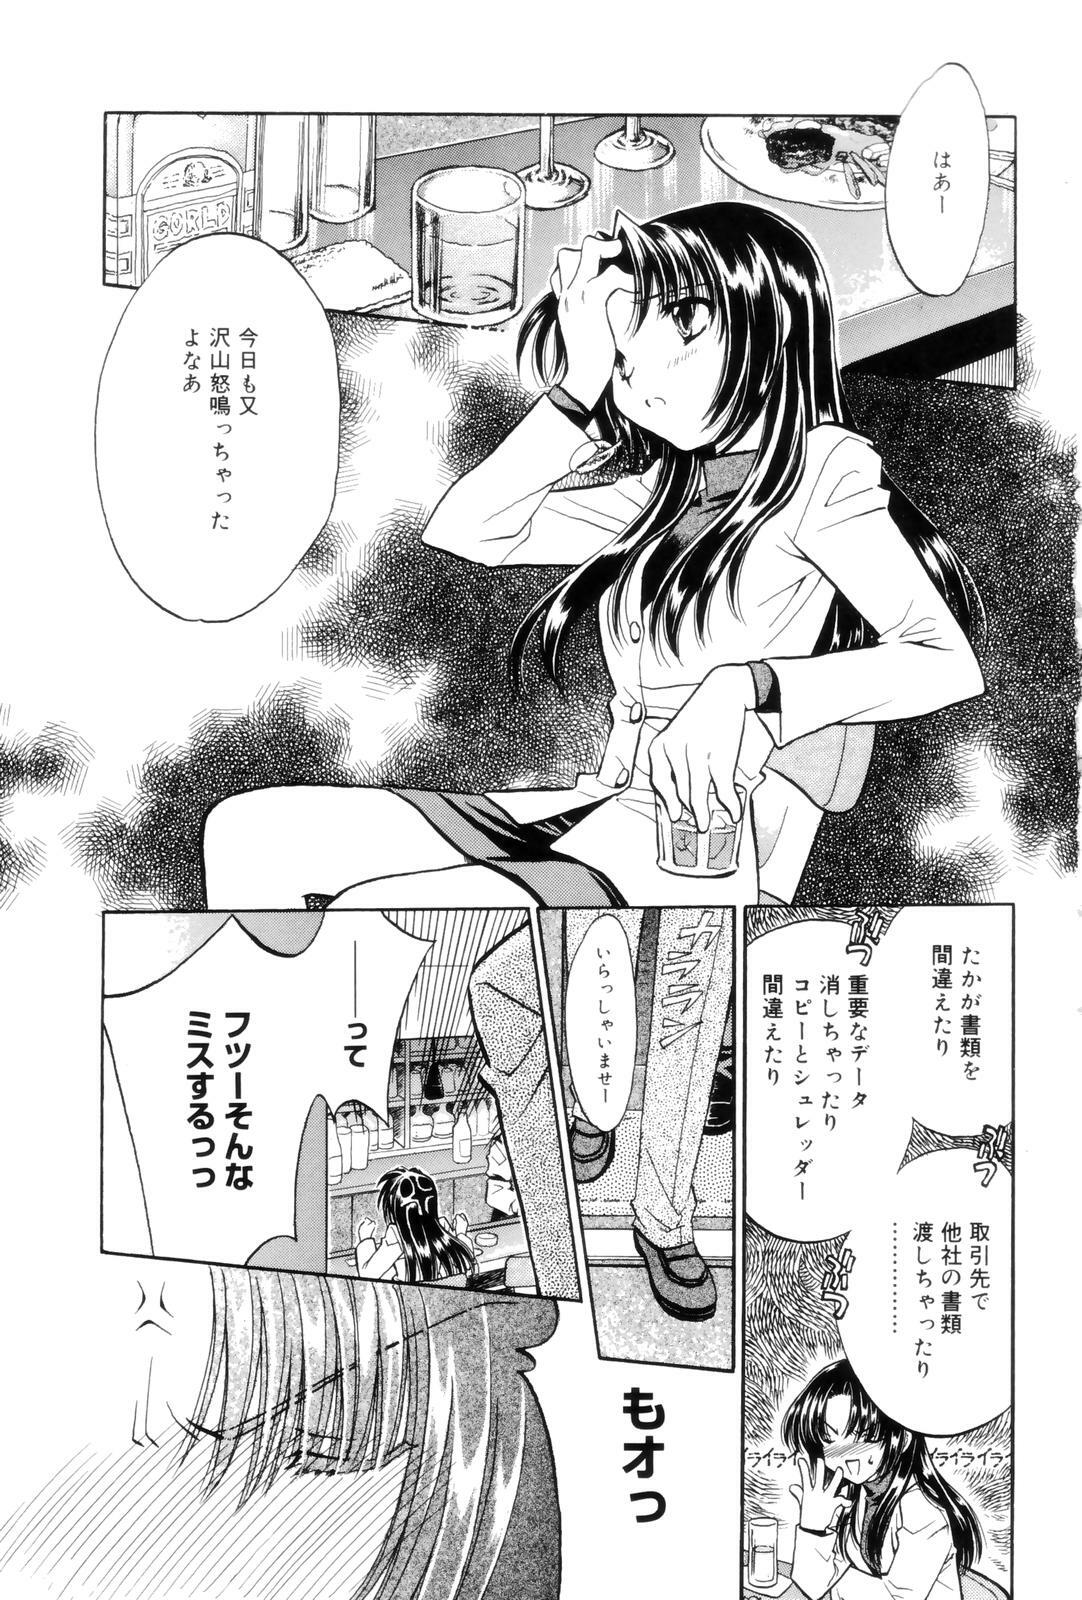 [Kamisato Takeharu] Kokuhaku -Tsutaeruomoi- page 5 full